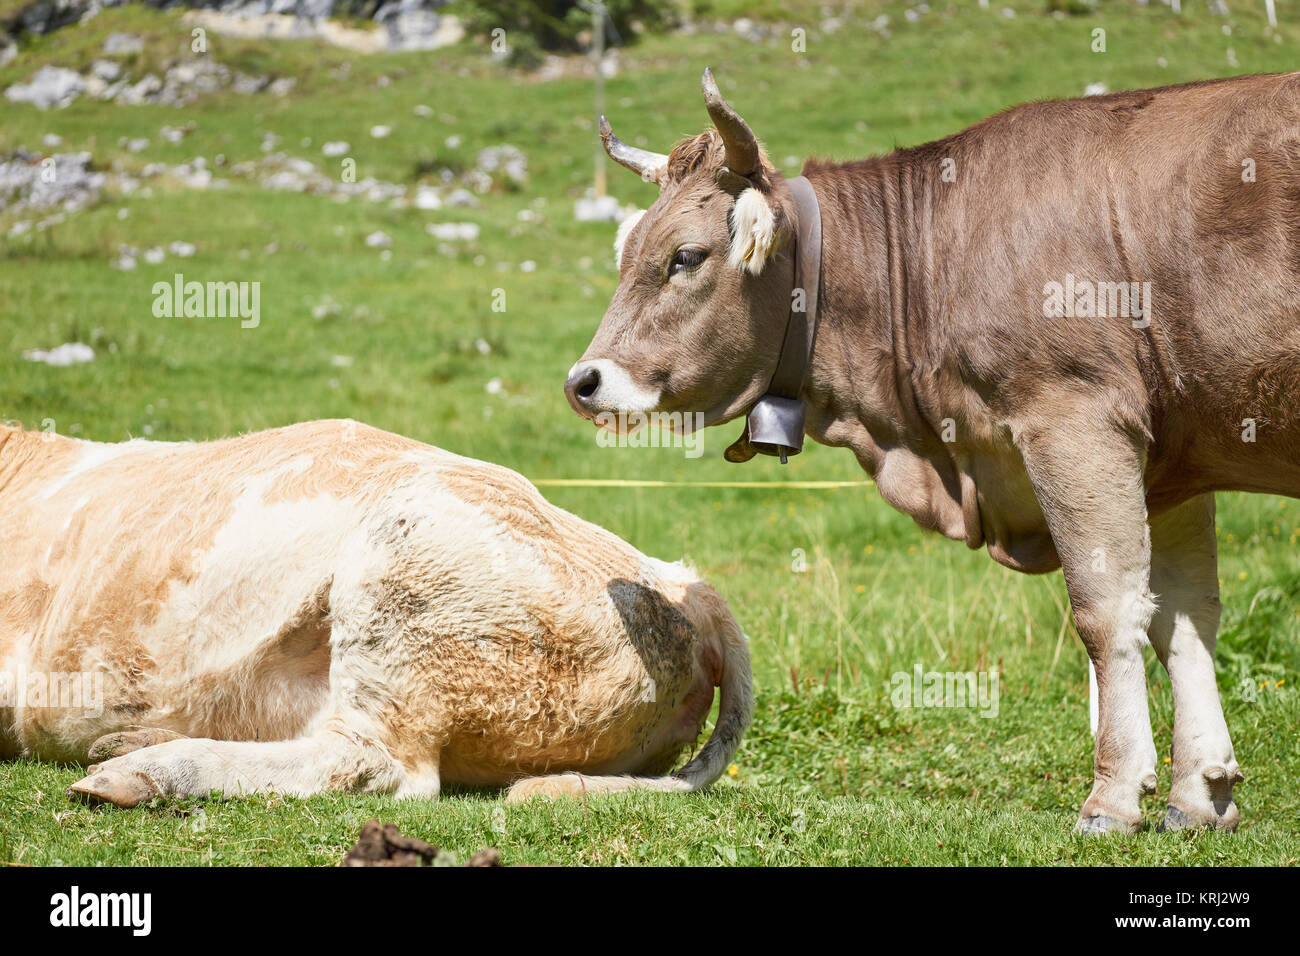 Vache suisse avec des cornes de vache et Bell - Oberland Bernois, Suisse Banque D'Images